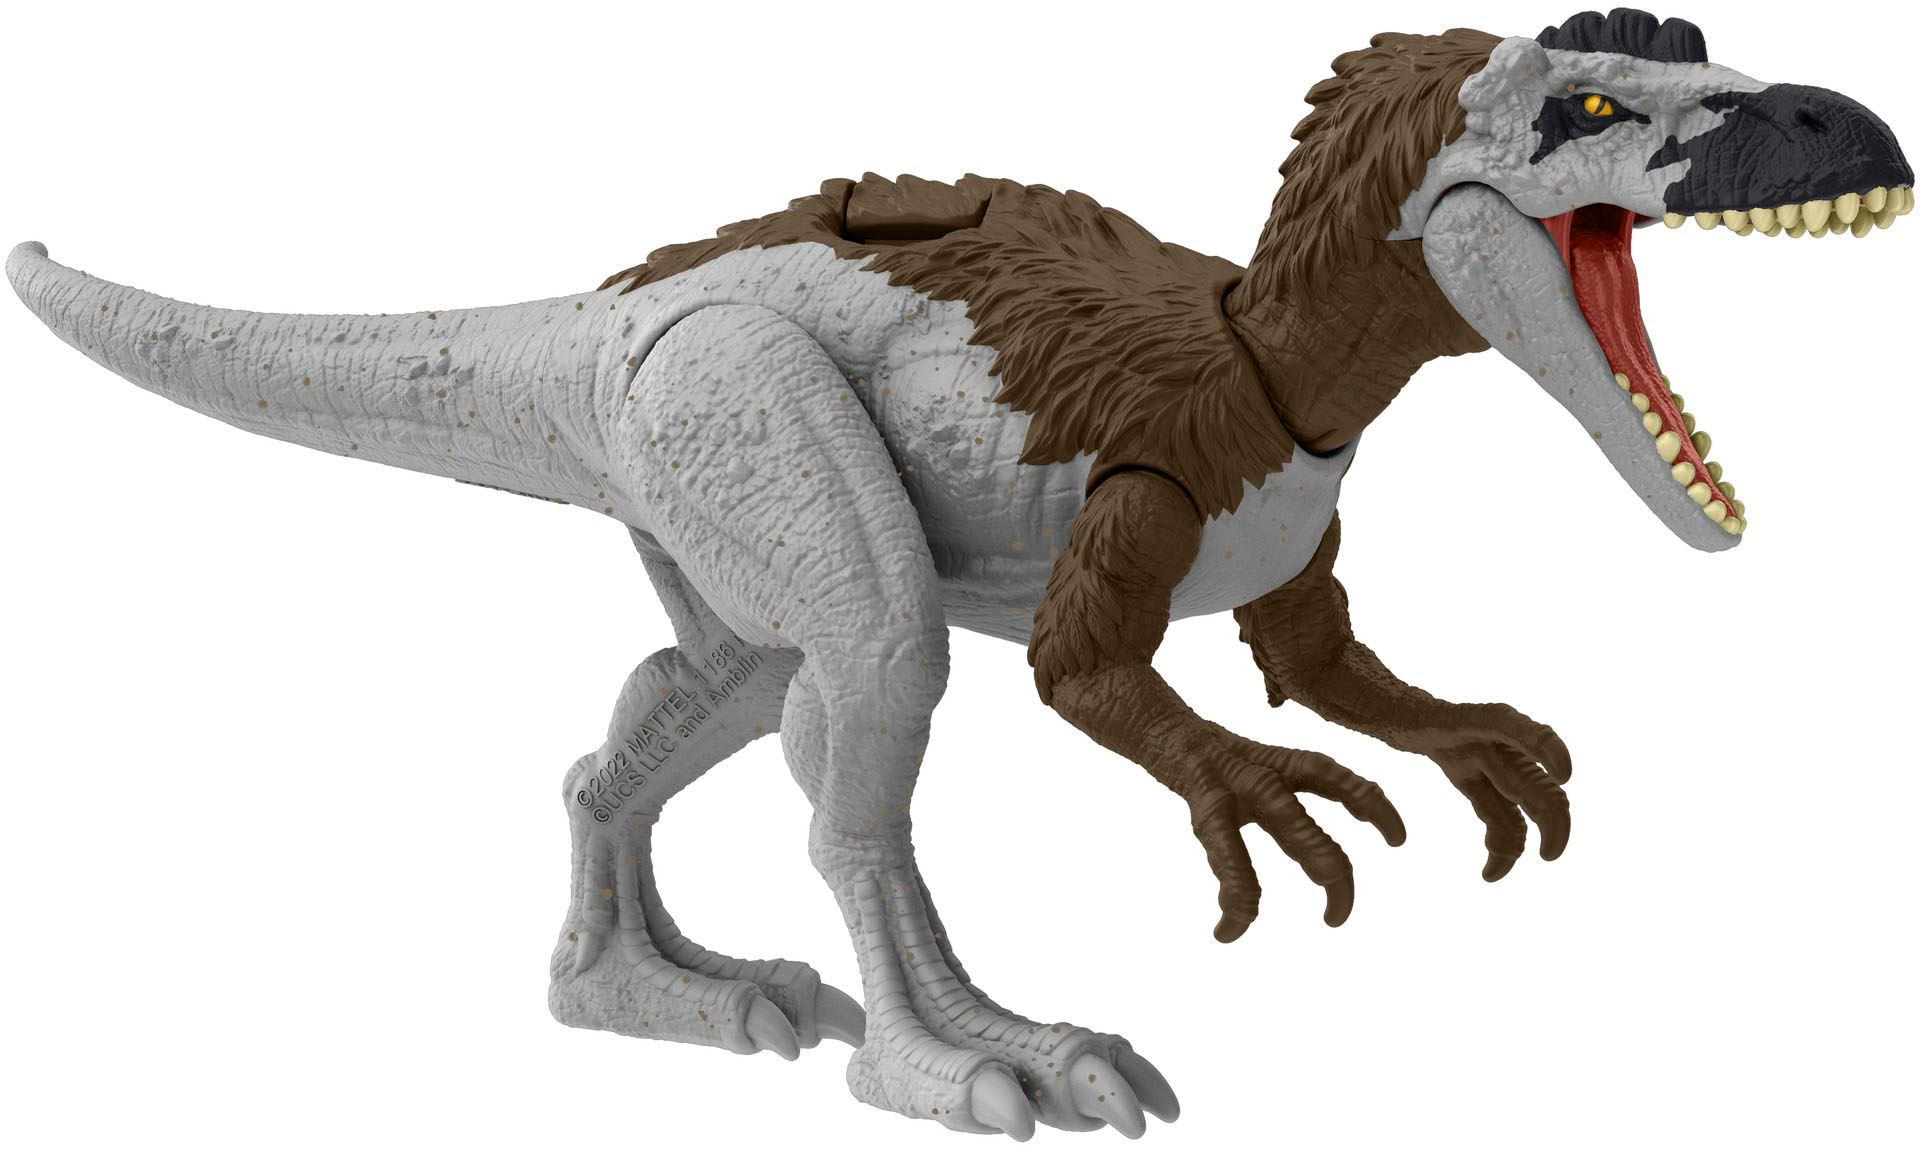 May Jurassic Best Vary Danger Styles Action World Buy Figure - Dinosaur Pack HLN49